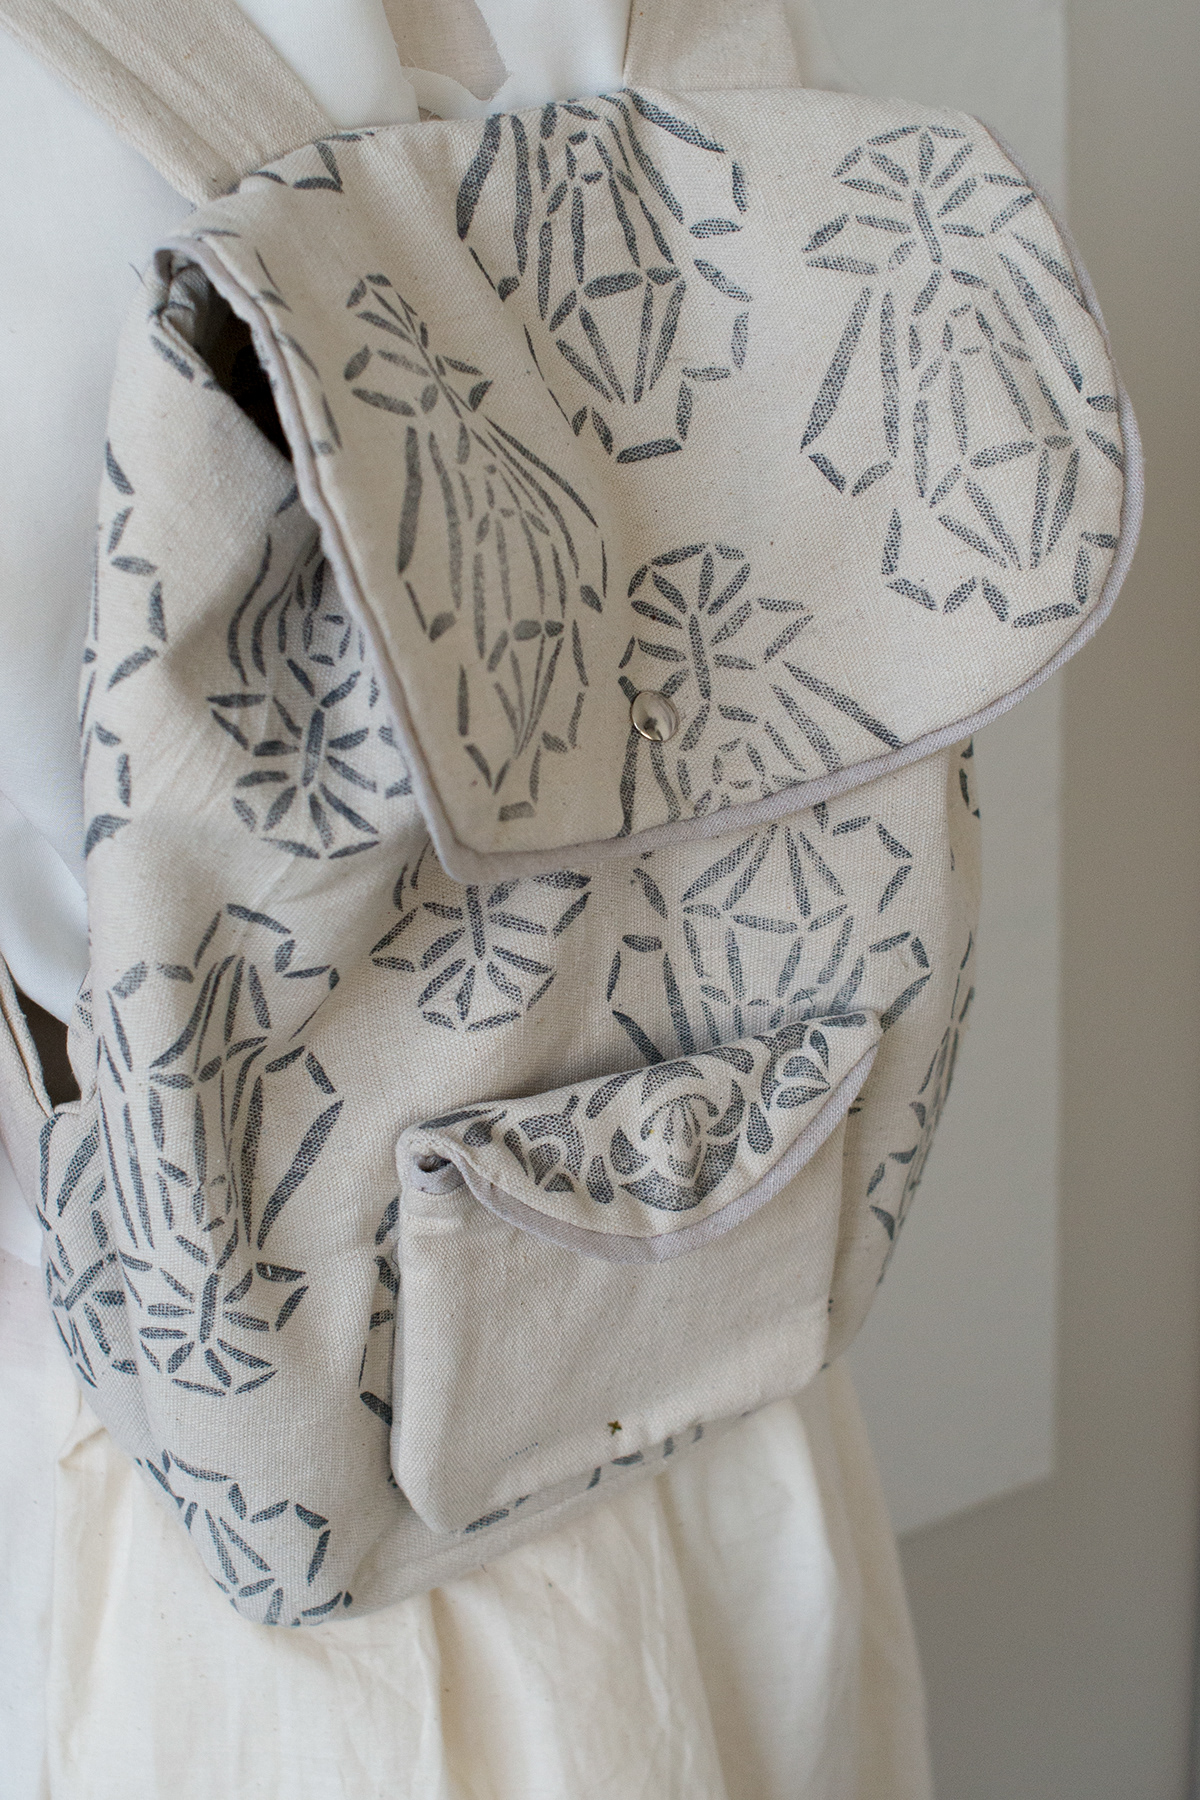 backpack floral pattern Wearable printmaking handmade